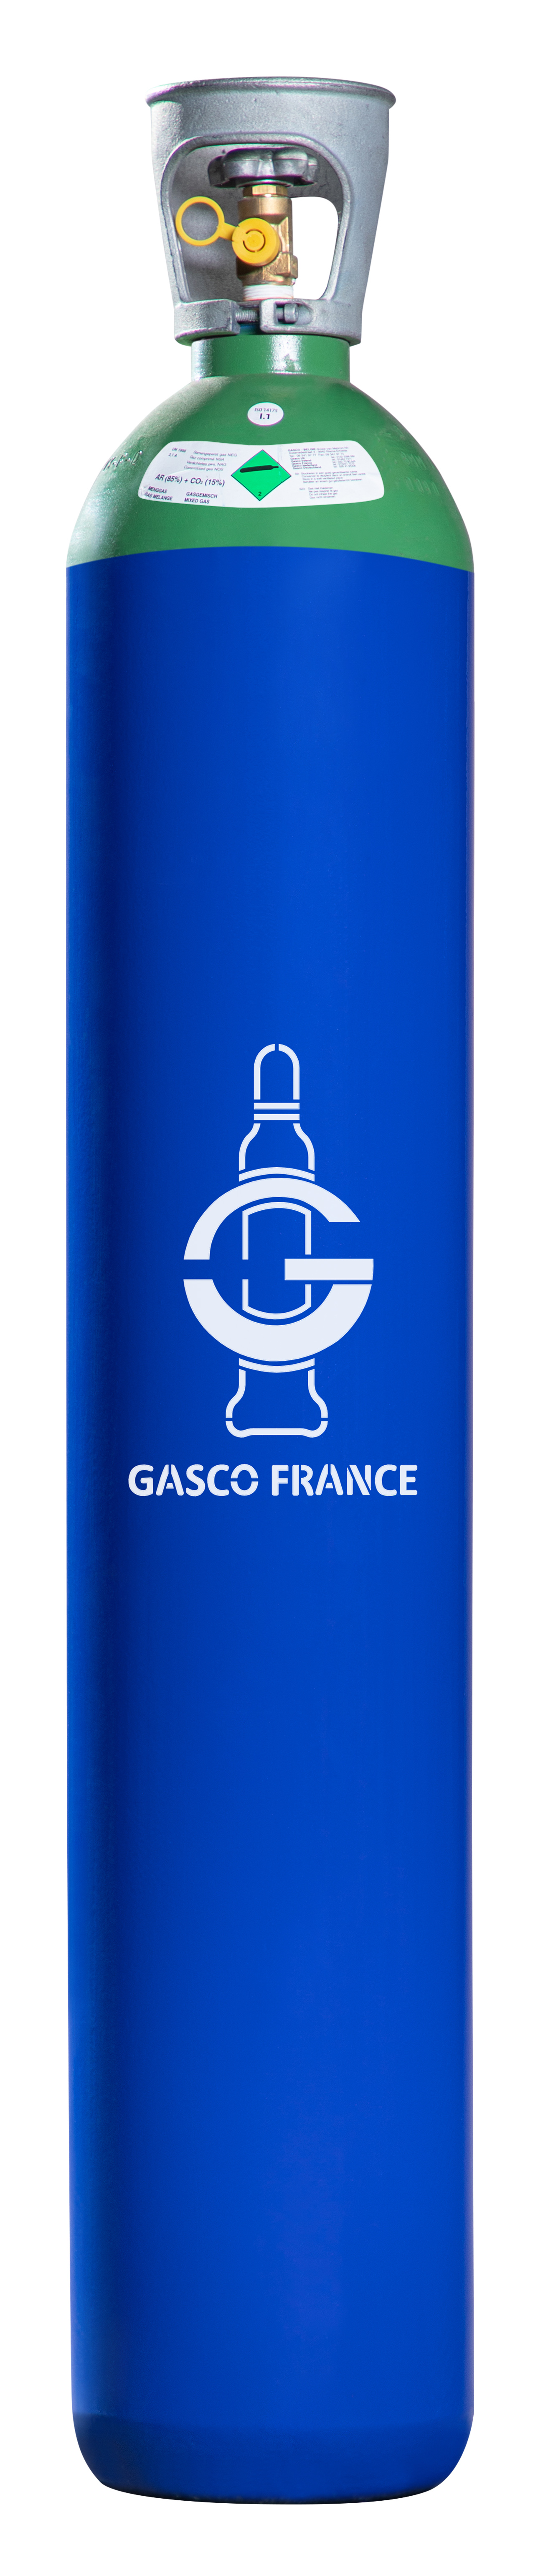 ② Bouteille Gasco Gaz Soudure Argon CO2 pour souder à la semi — Outillage